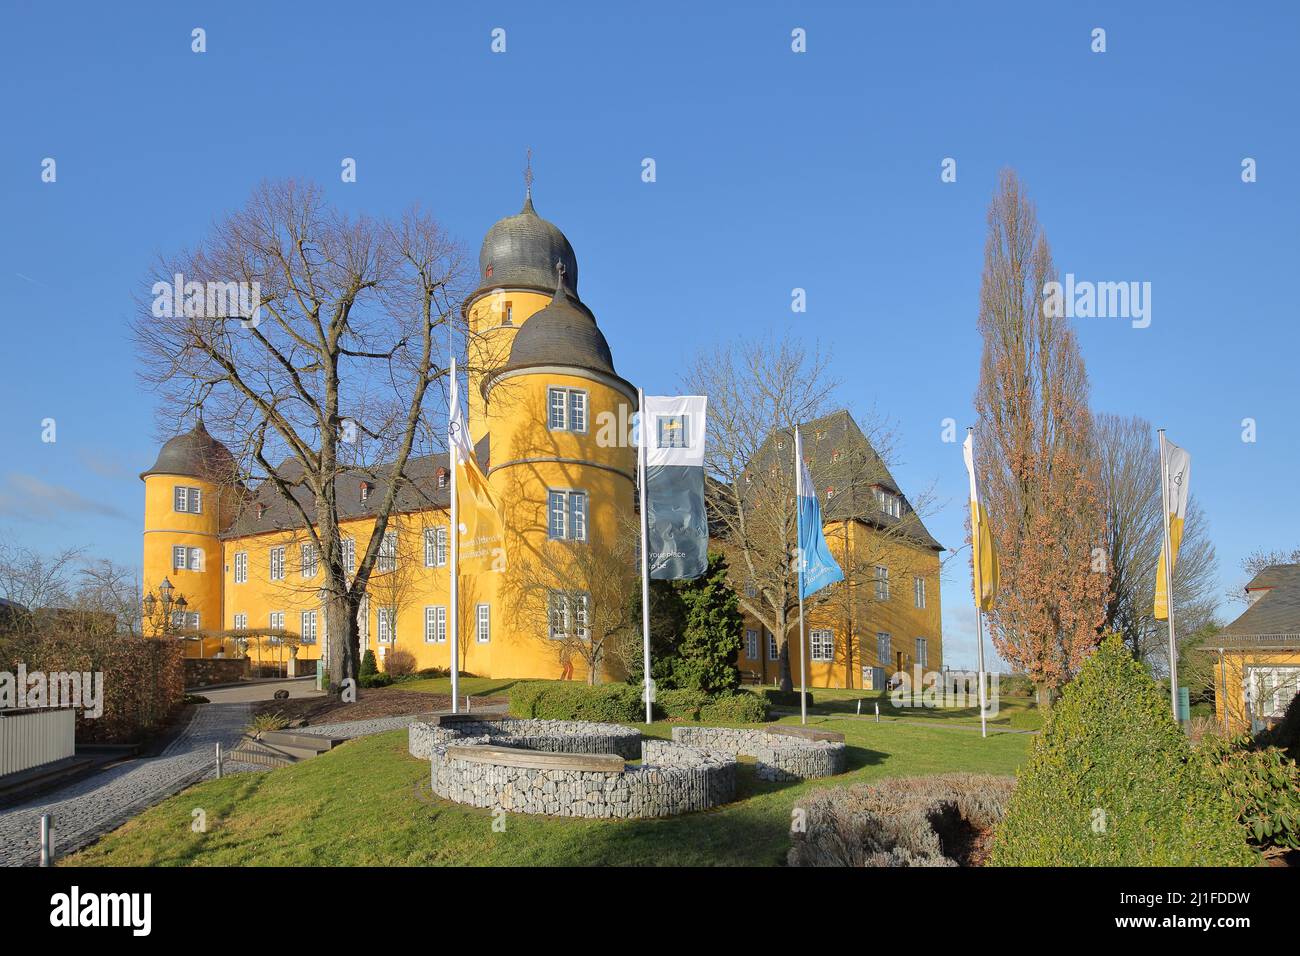 Baroque castle in Montabaur, Rhineland-Palatinate, Germany Stock Photo